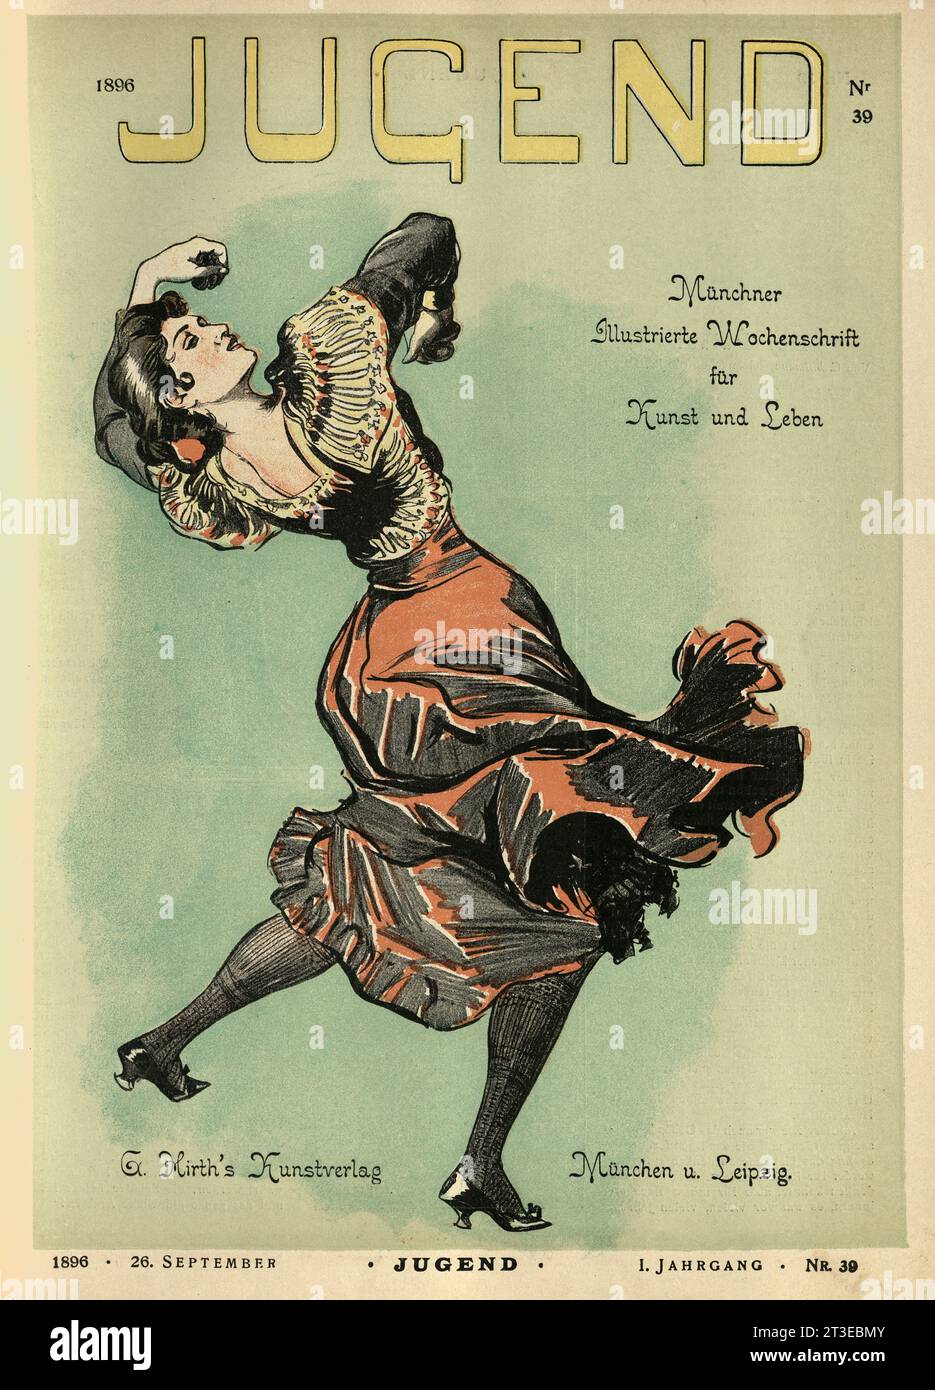 Couverture vintage du magazine Jugend, Jeune femme, danseuse de flamenco avec castagnettes, Jugendstil, Art Nouveau, années 1890 allemandes Banque D'Images